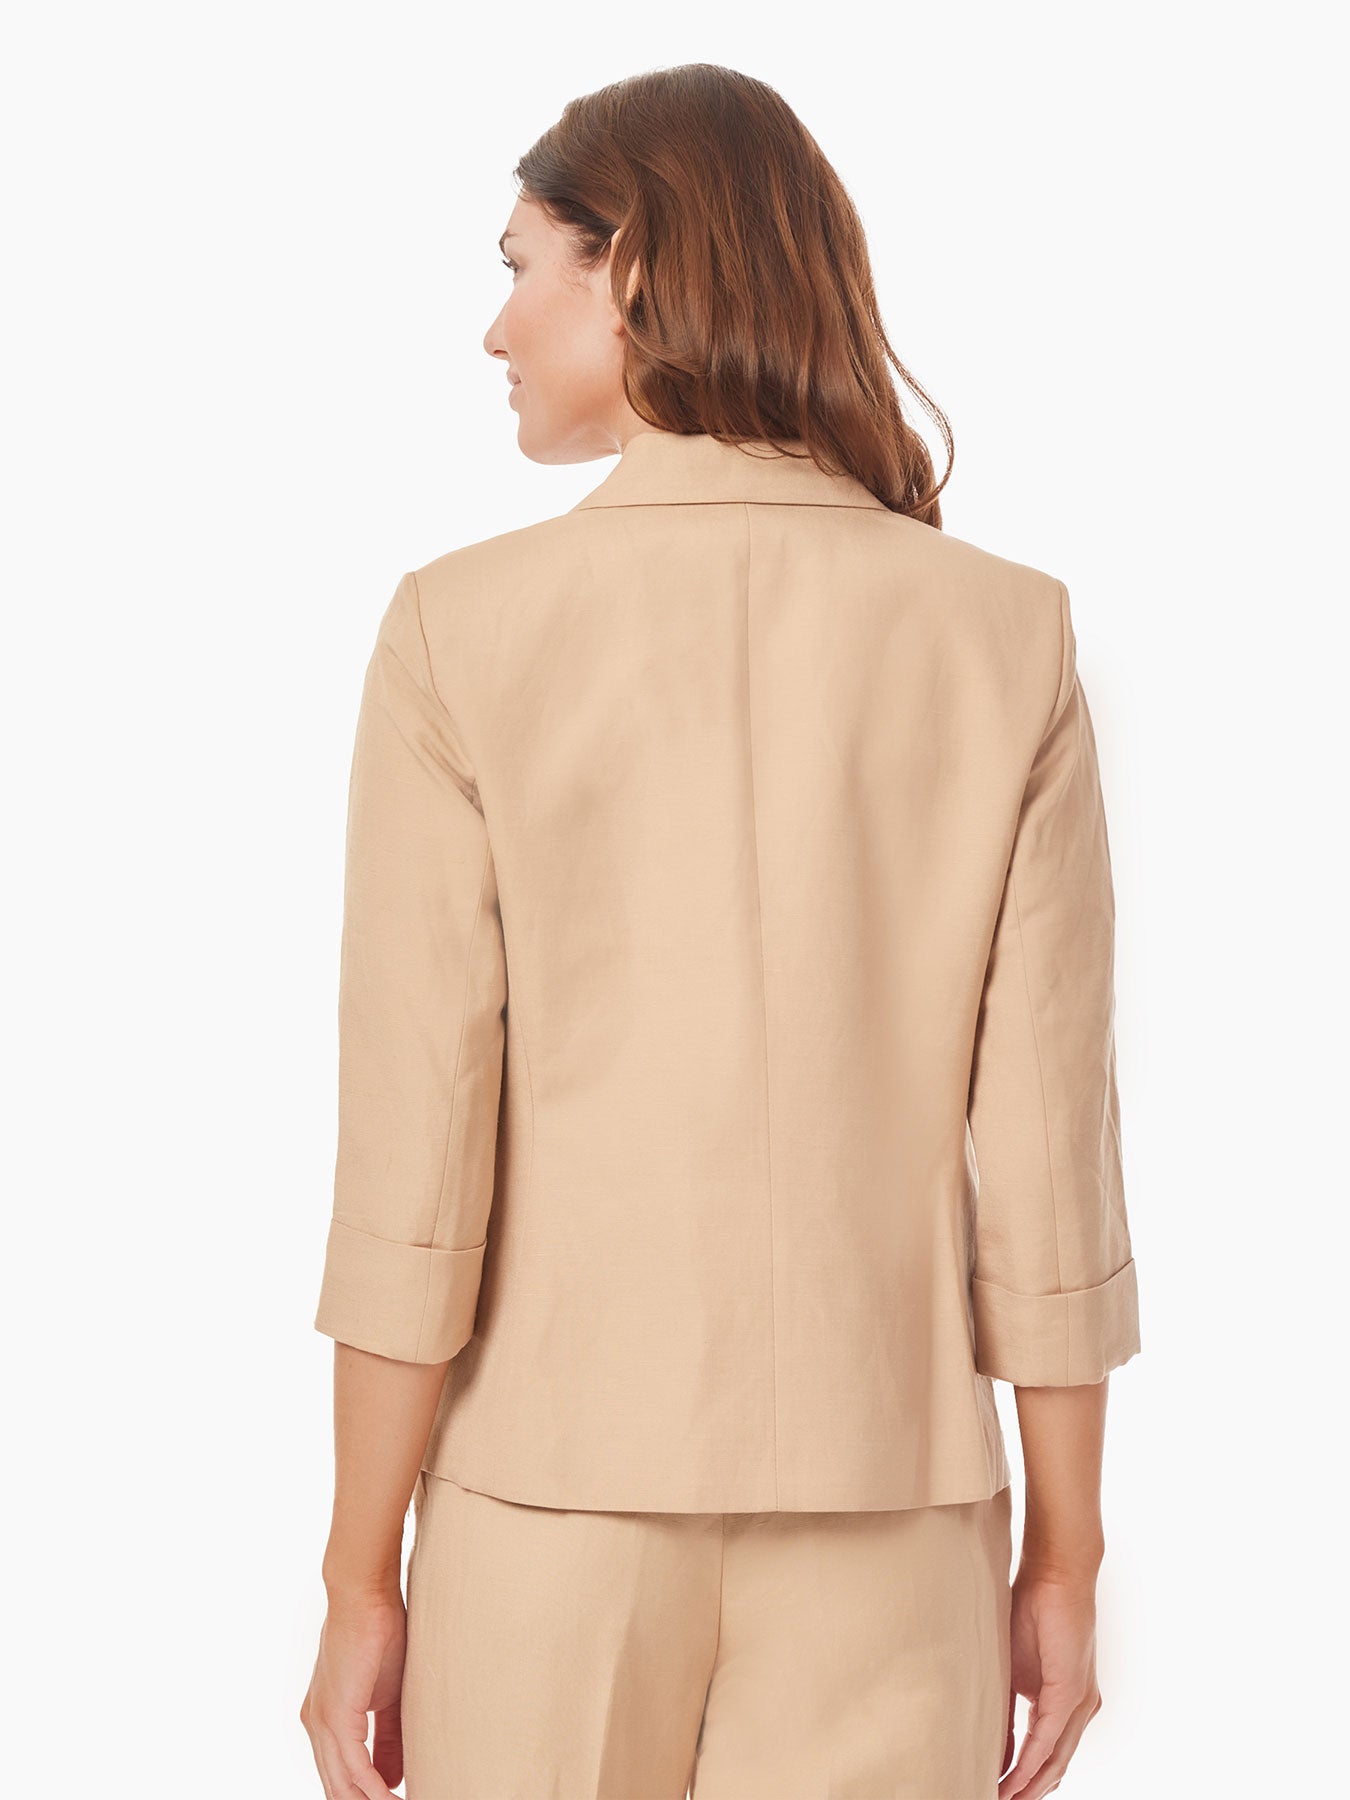 Kasper to Produce Jones New York Women's Sportswear, Tailored Apparel